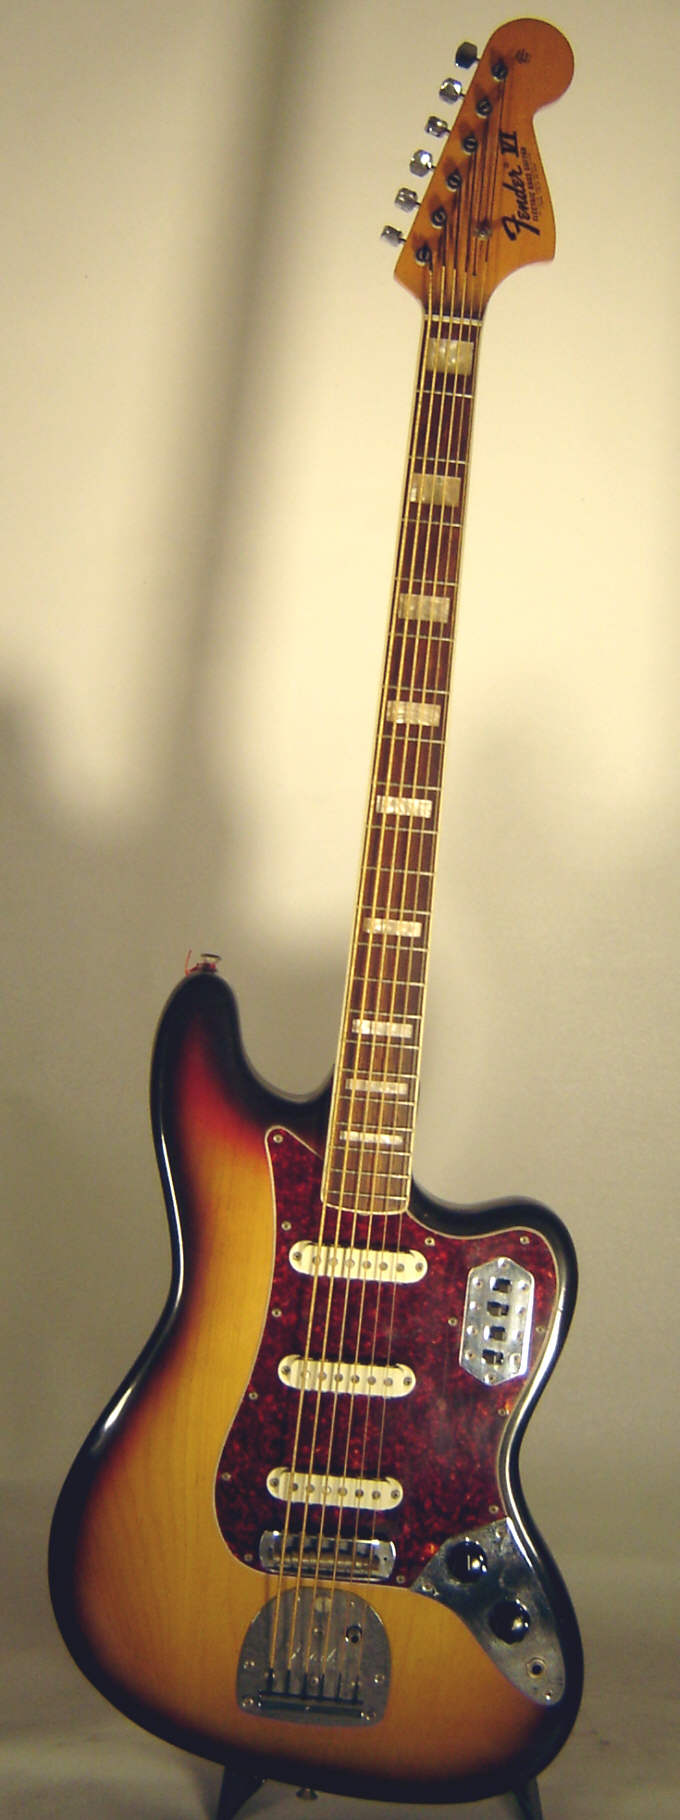 Fender-Bass-6-front.jpg